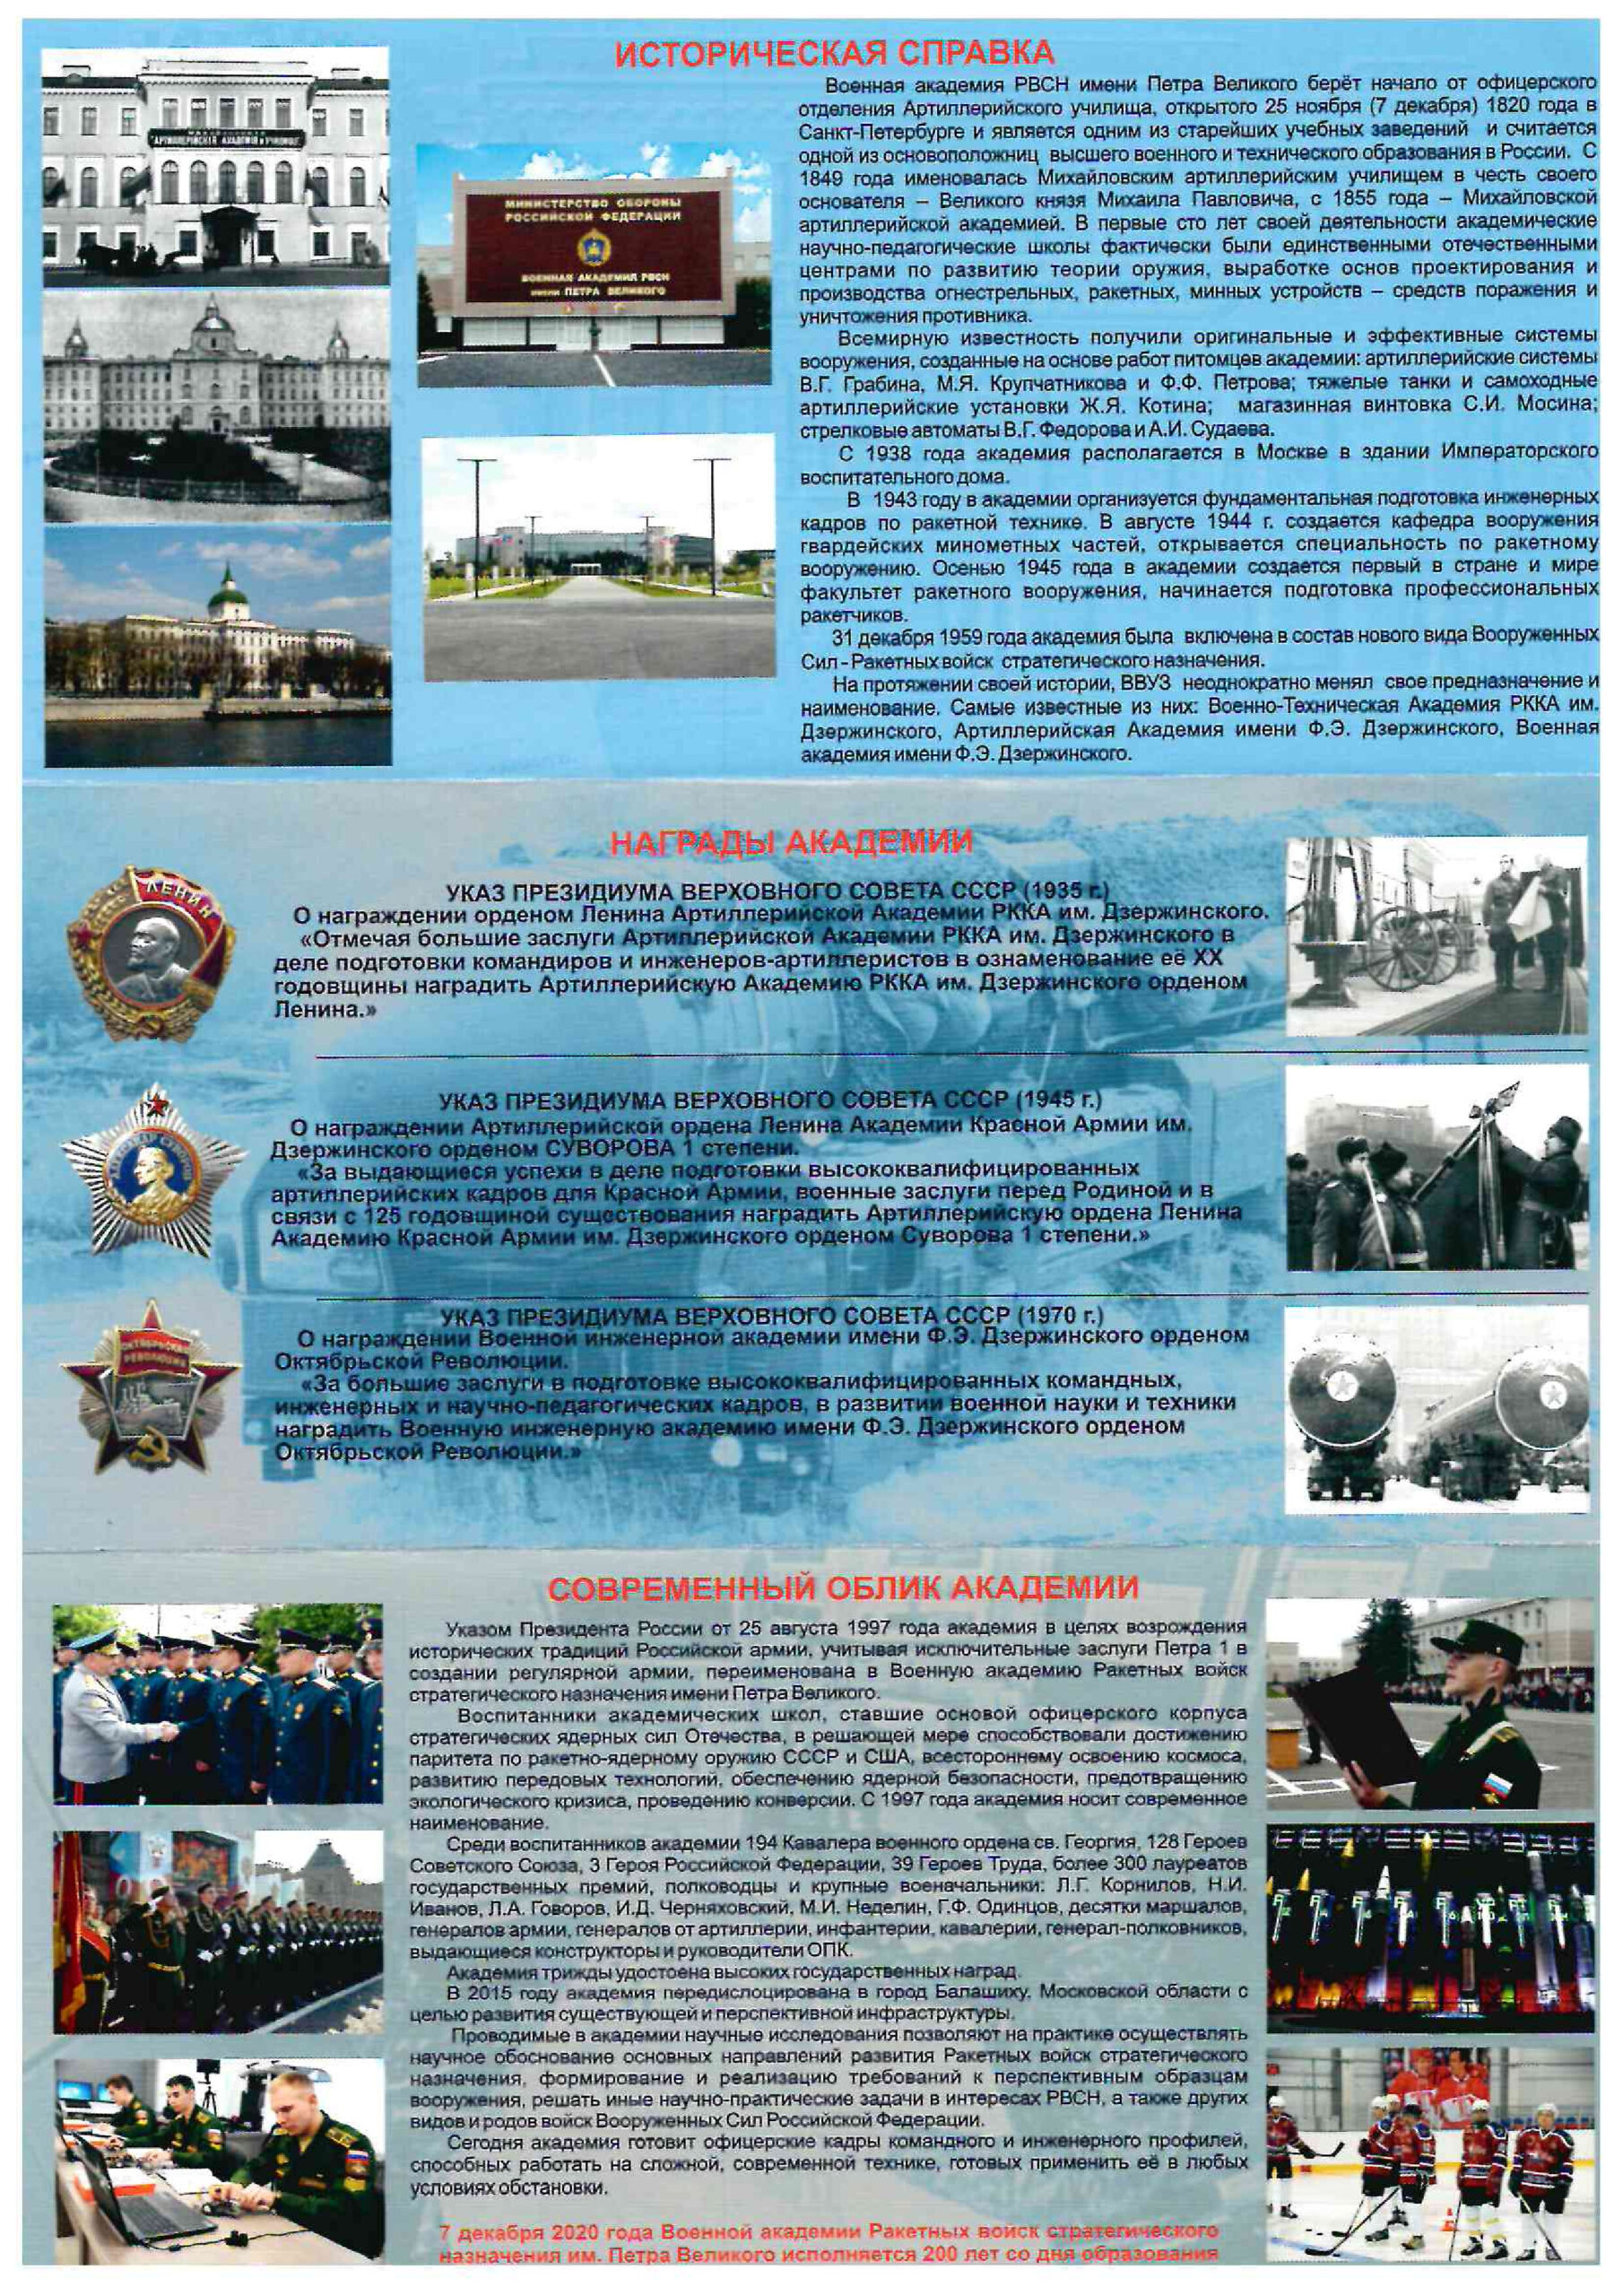 Военная академия ракетный войск стратегического назначения имени Петра Великого 3